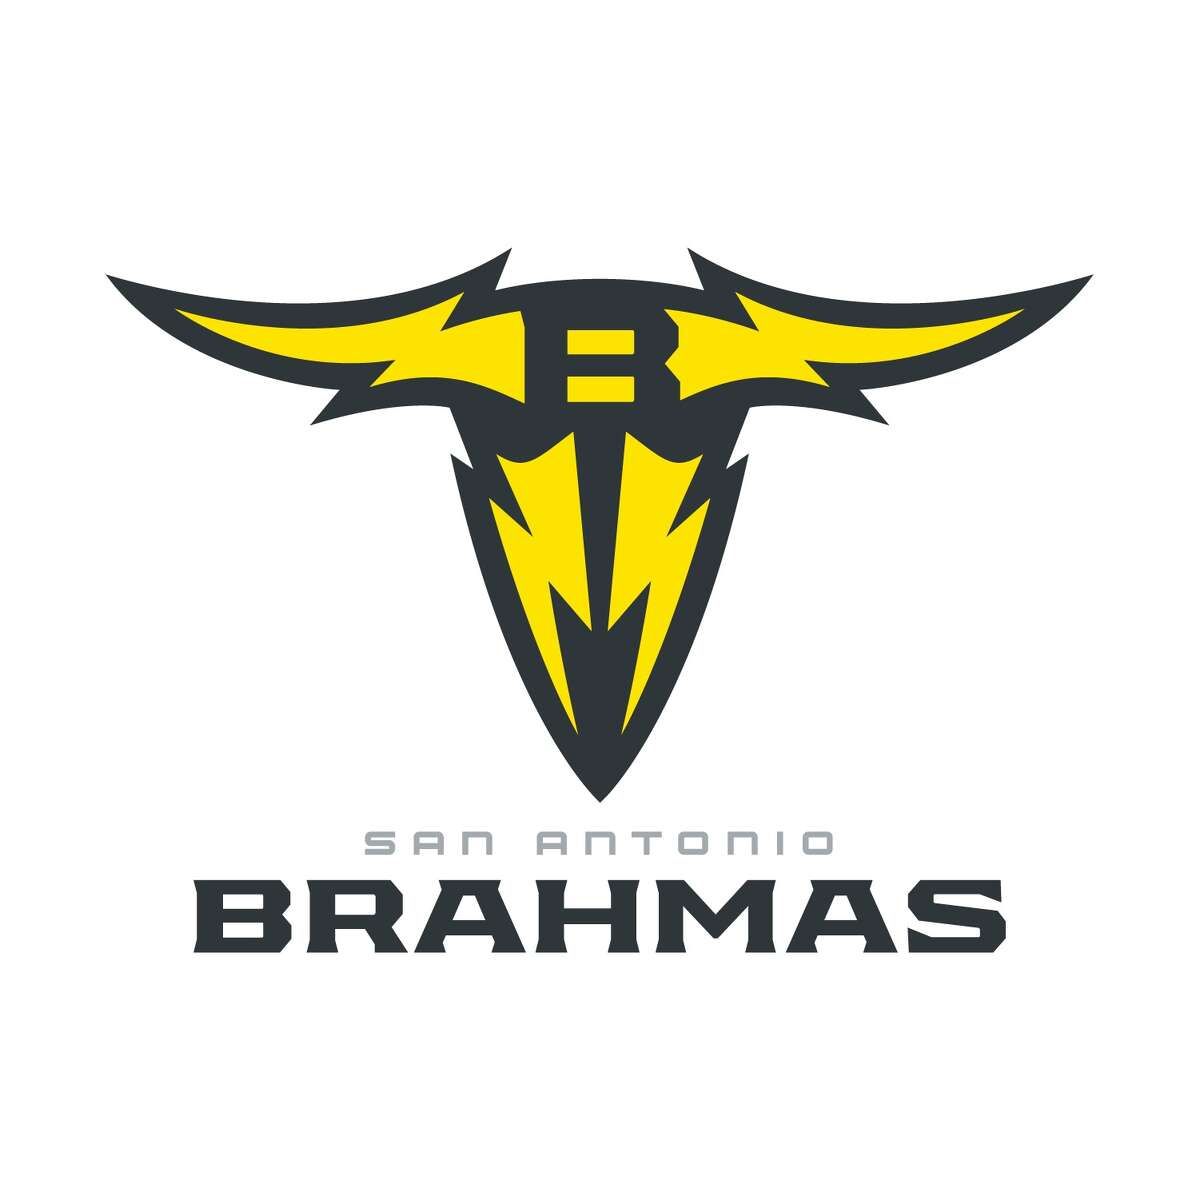 San Antonio Brahmas